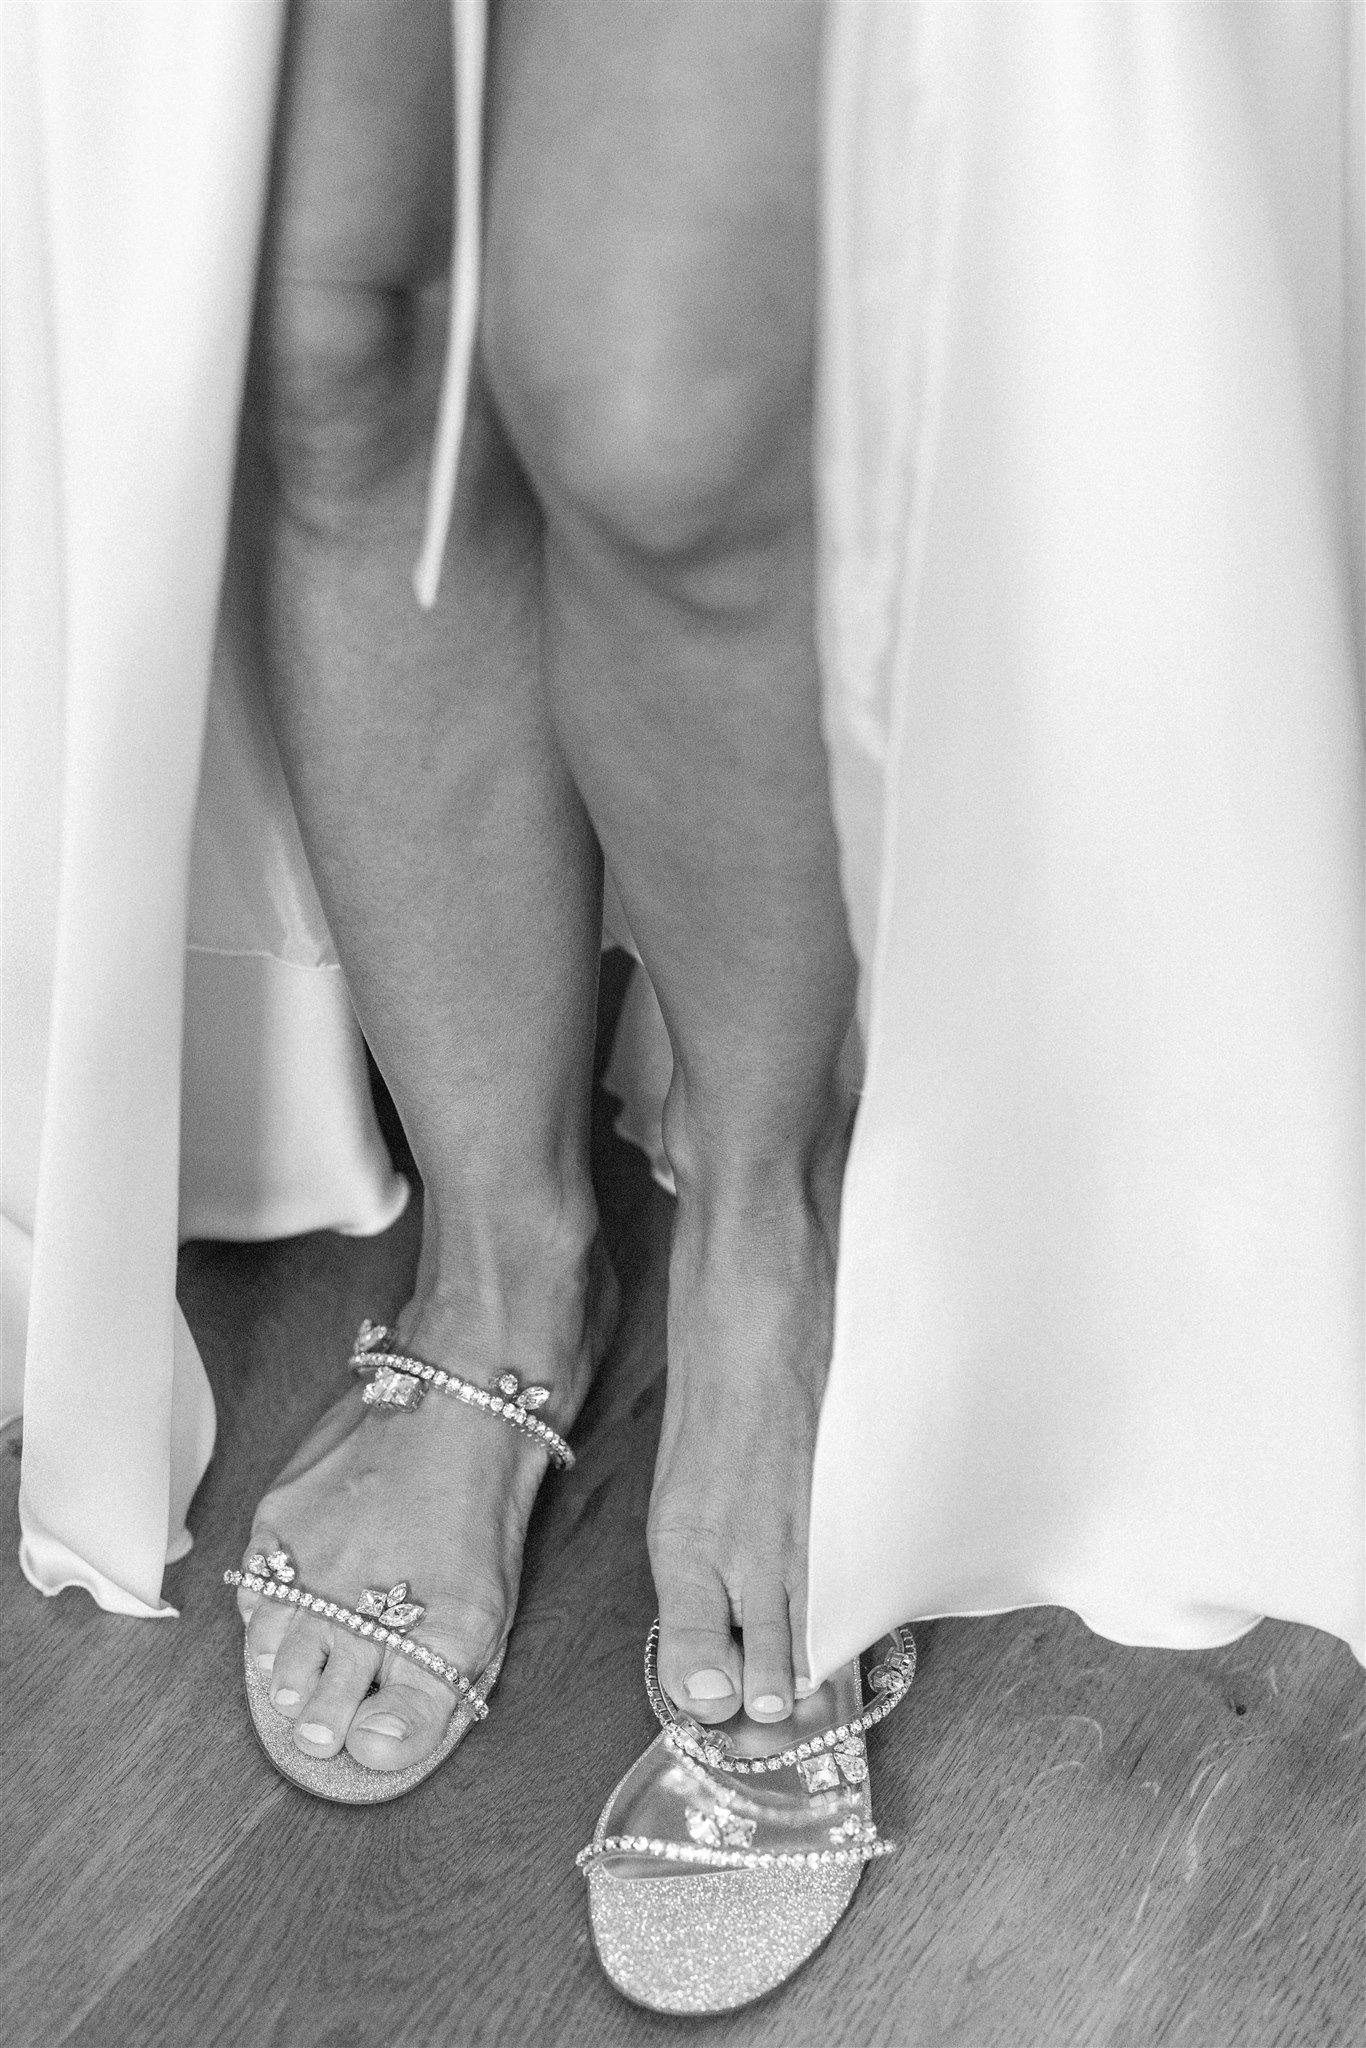 Bröllop på Kivikstrands badhotell. MUA är Becky Södergren samt Qarma i Karlskrona. Foto: Tove Lundquist, bröllopsfotograf i Skåne. Brudklänning från Qarma, skor från Christian Louboutin.